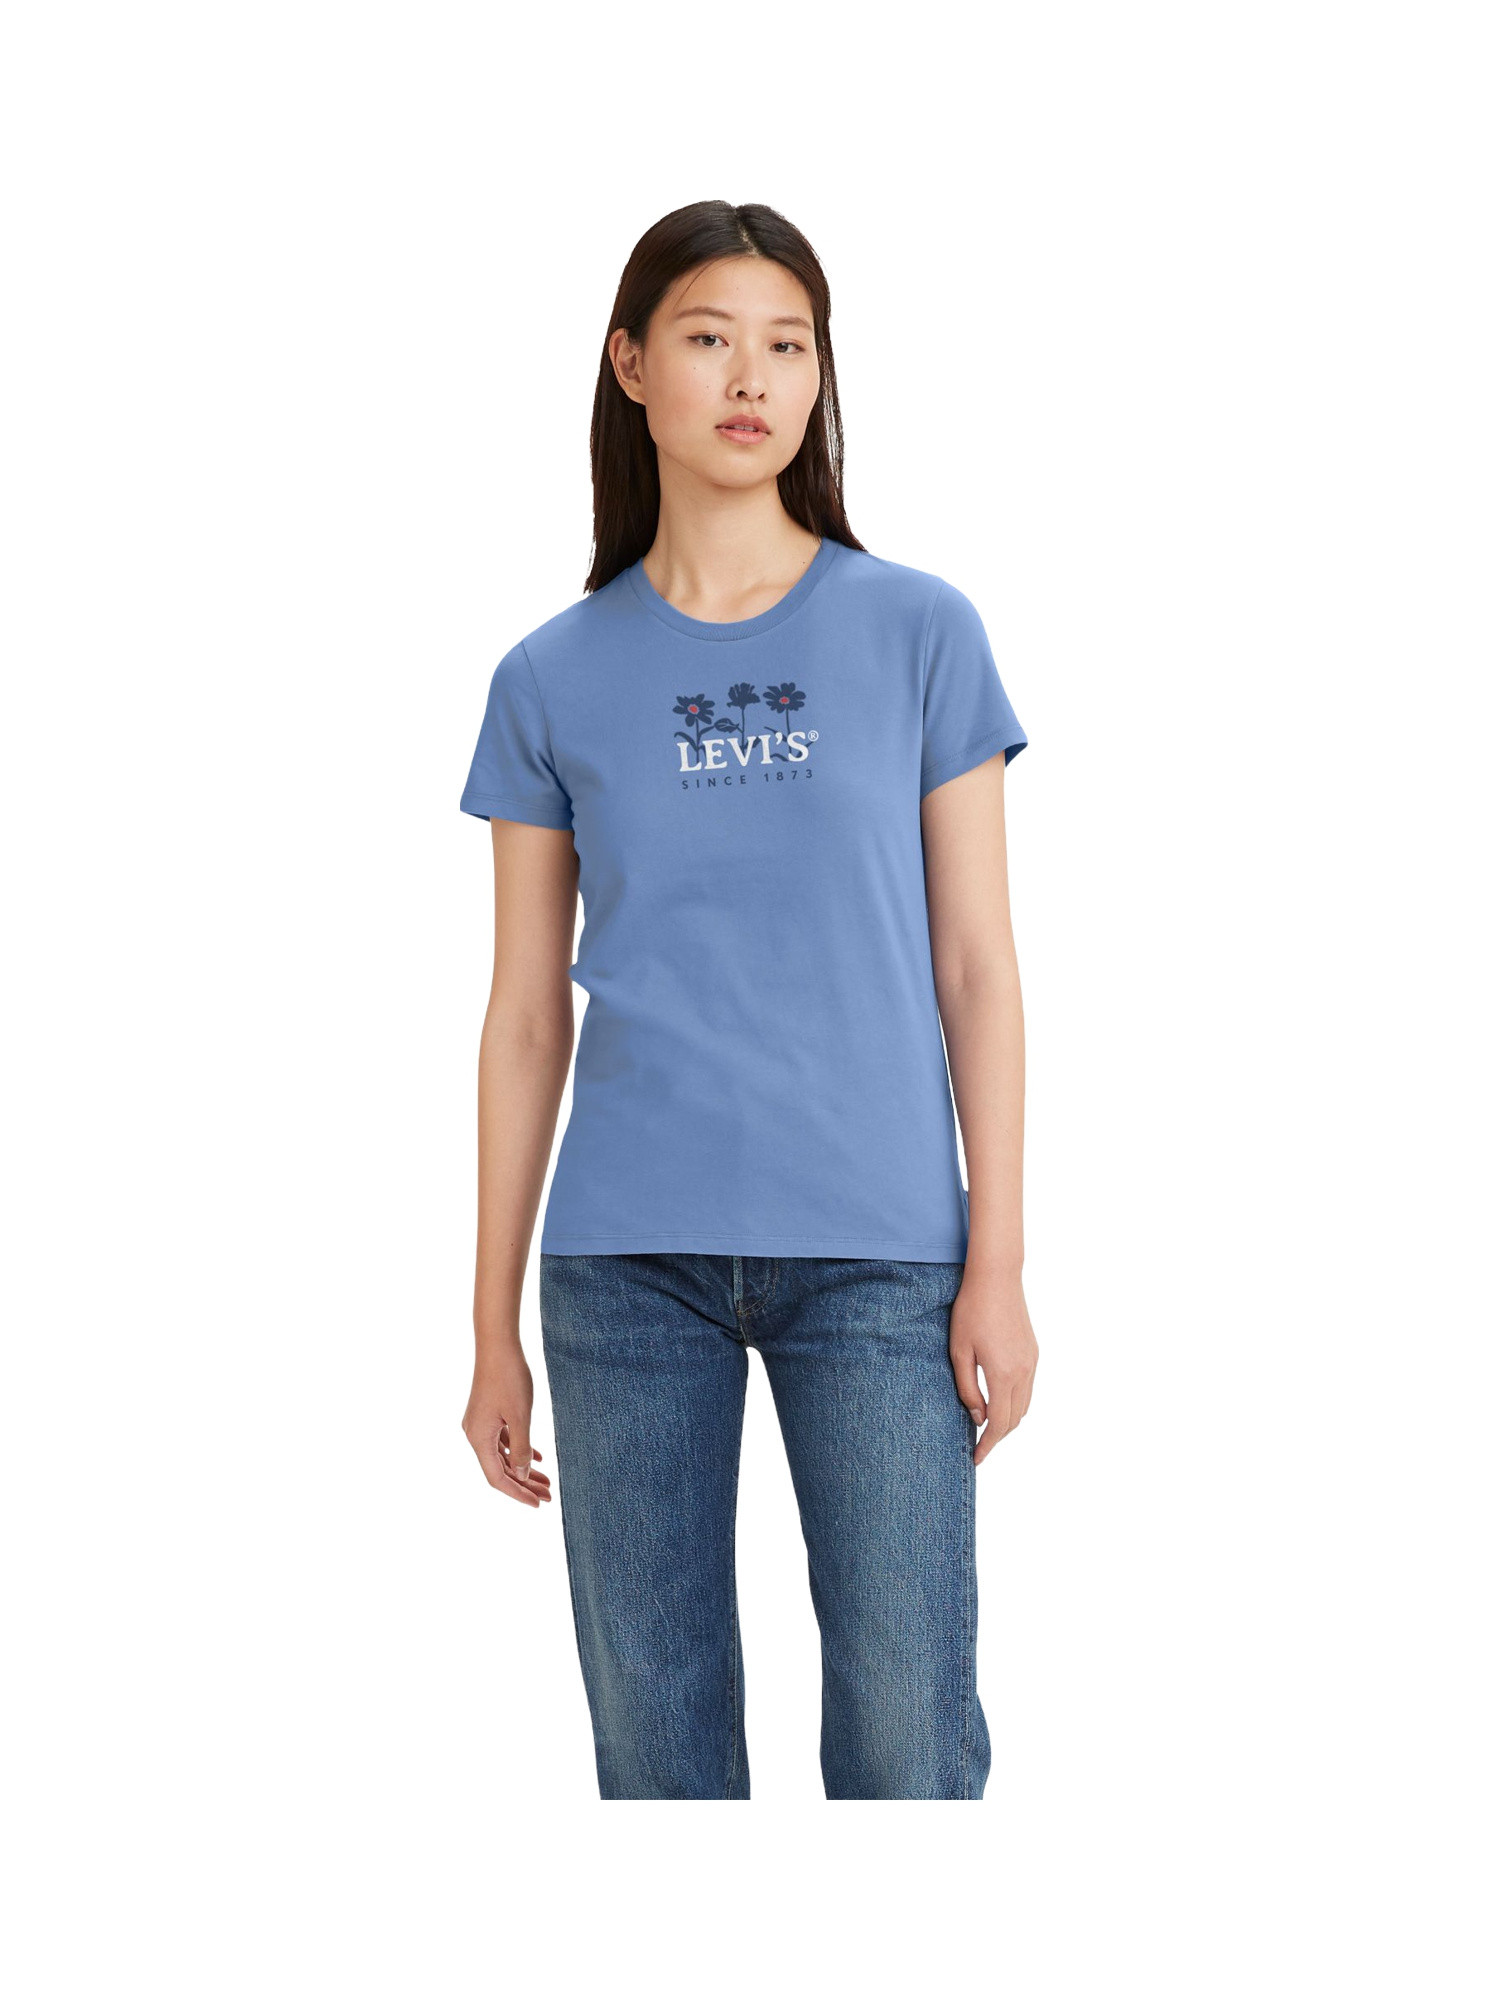 Levi's - Floral Logo T-Shirt, Light Blue, large image number 2